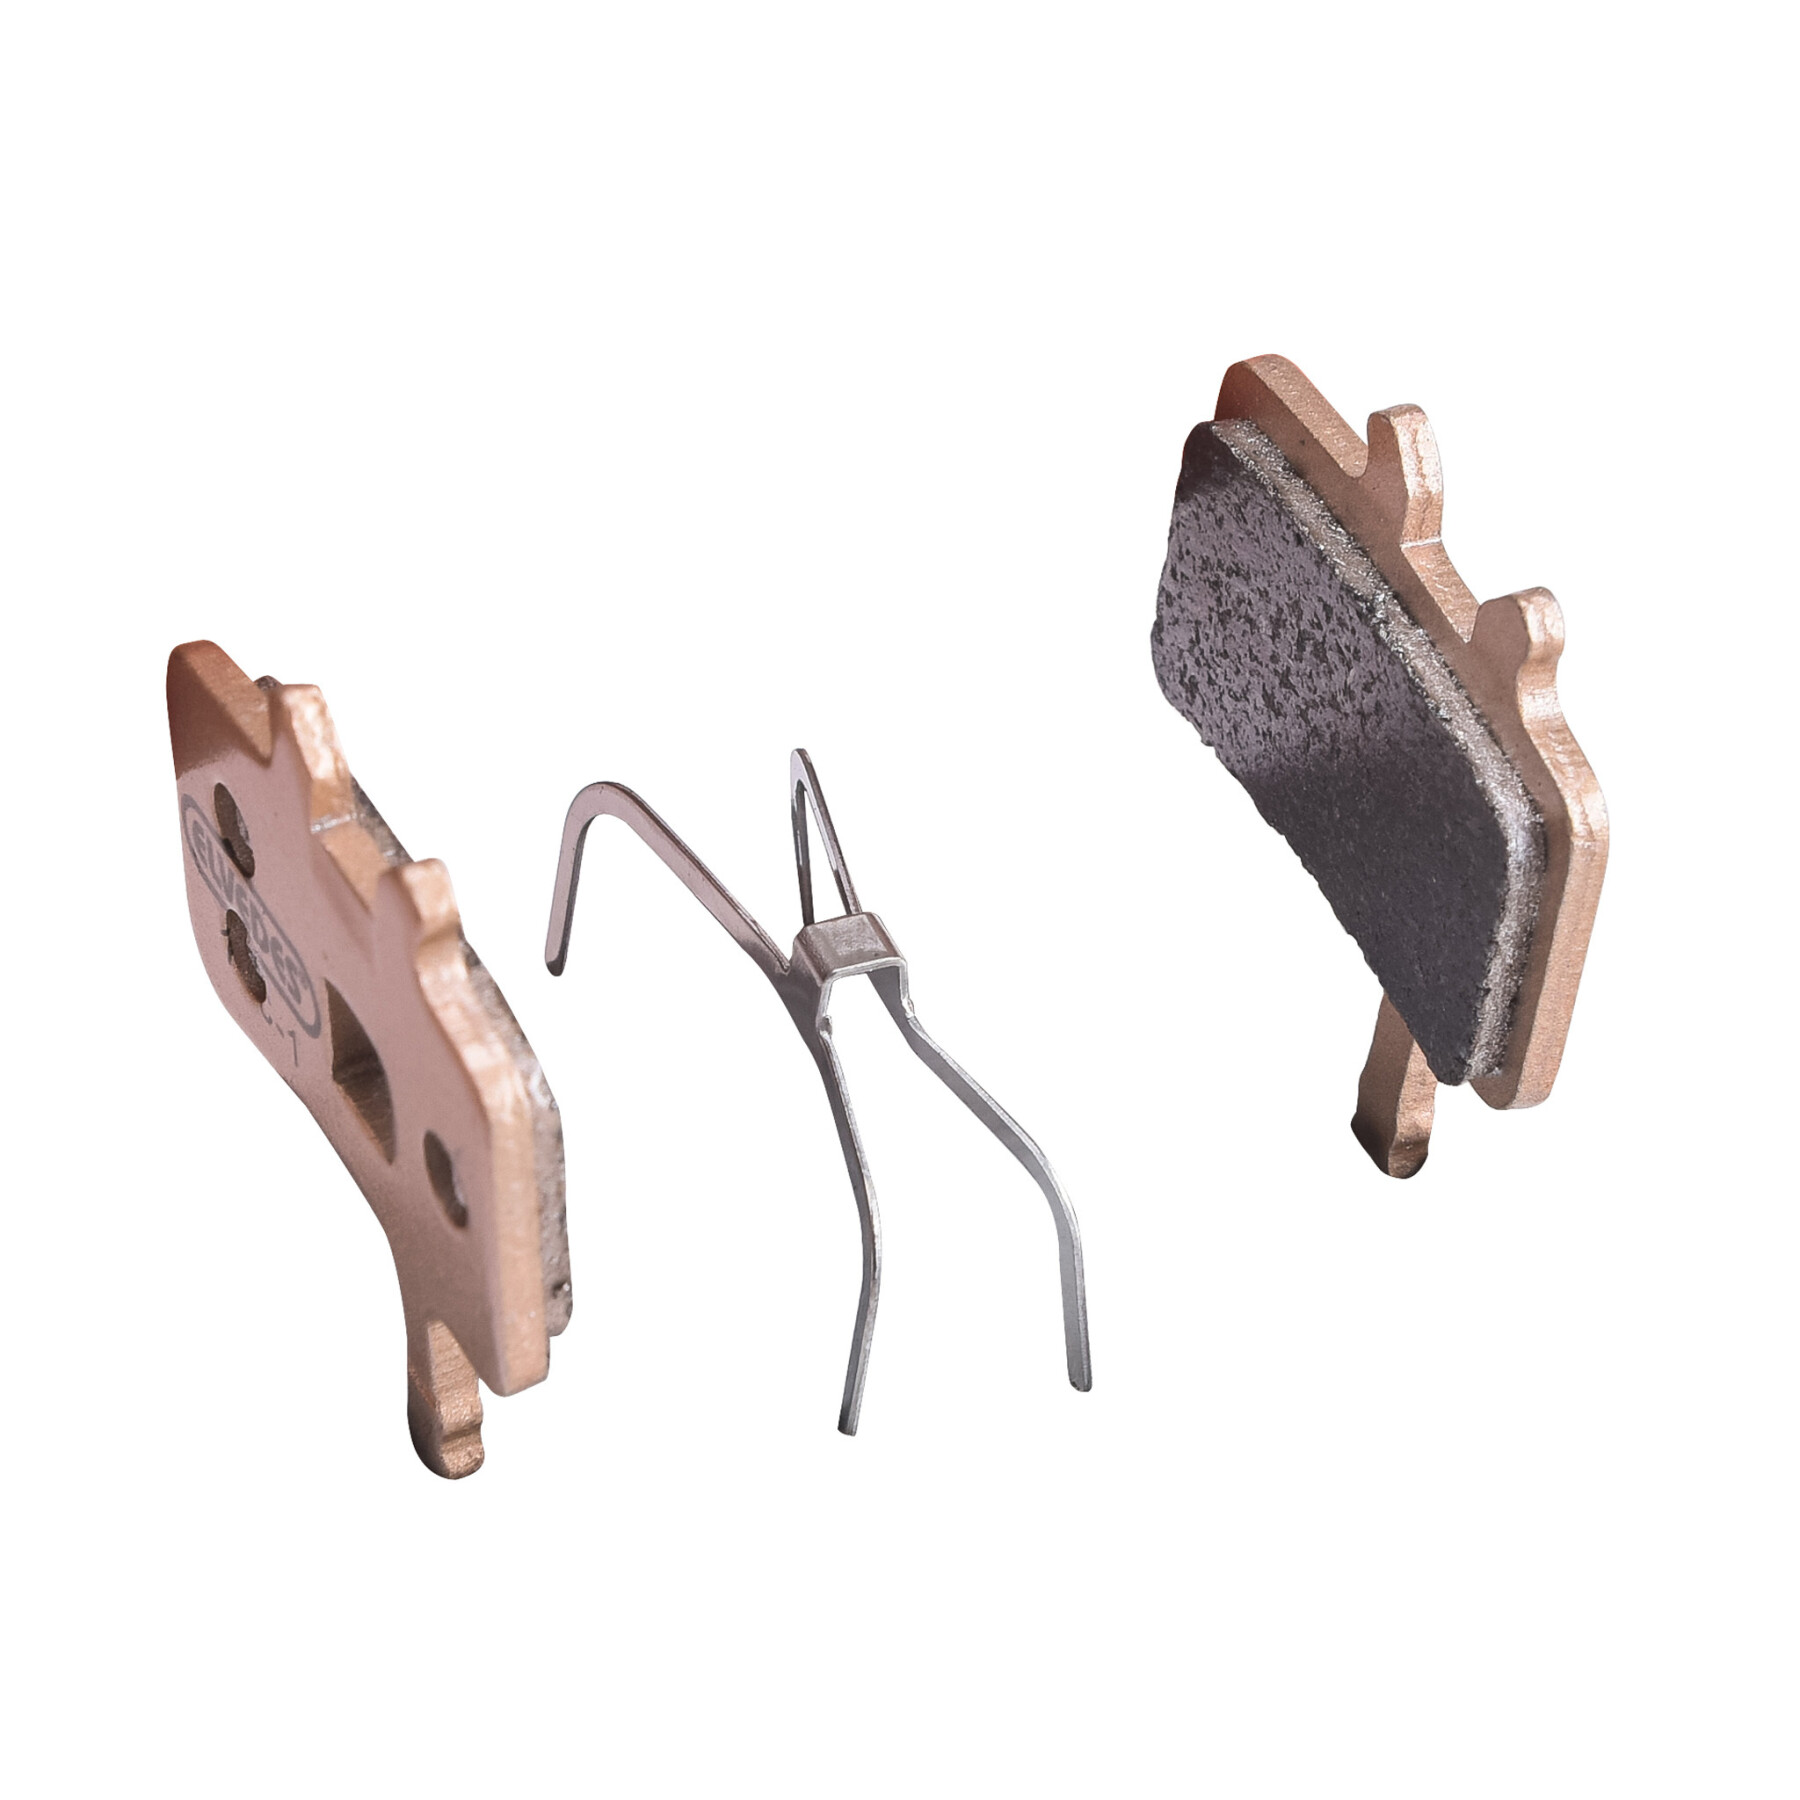 Pair of metal bicycle brake pads Elvedes Avid mech. 2002-2004 / BB7 / all Juicy